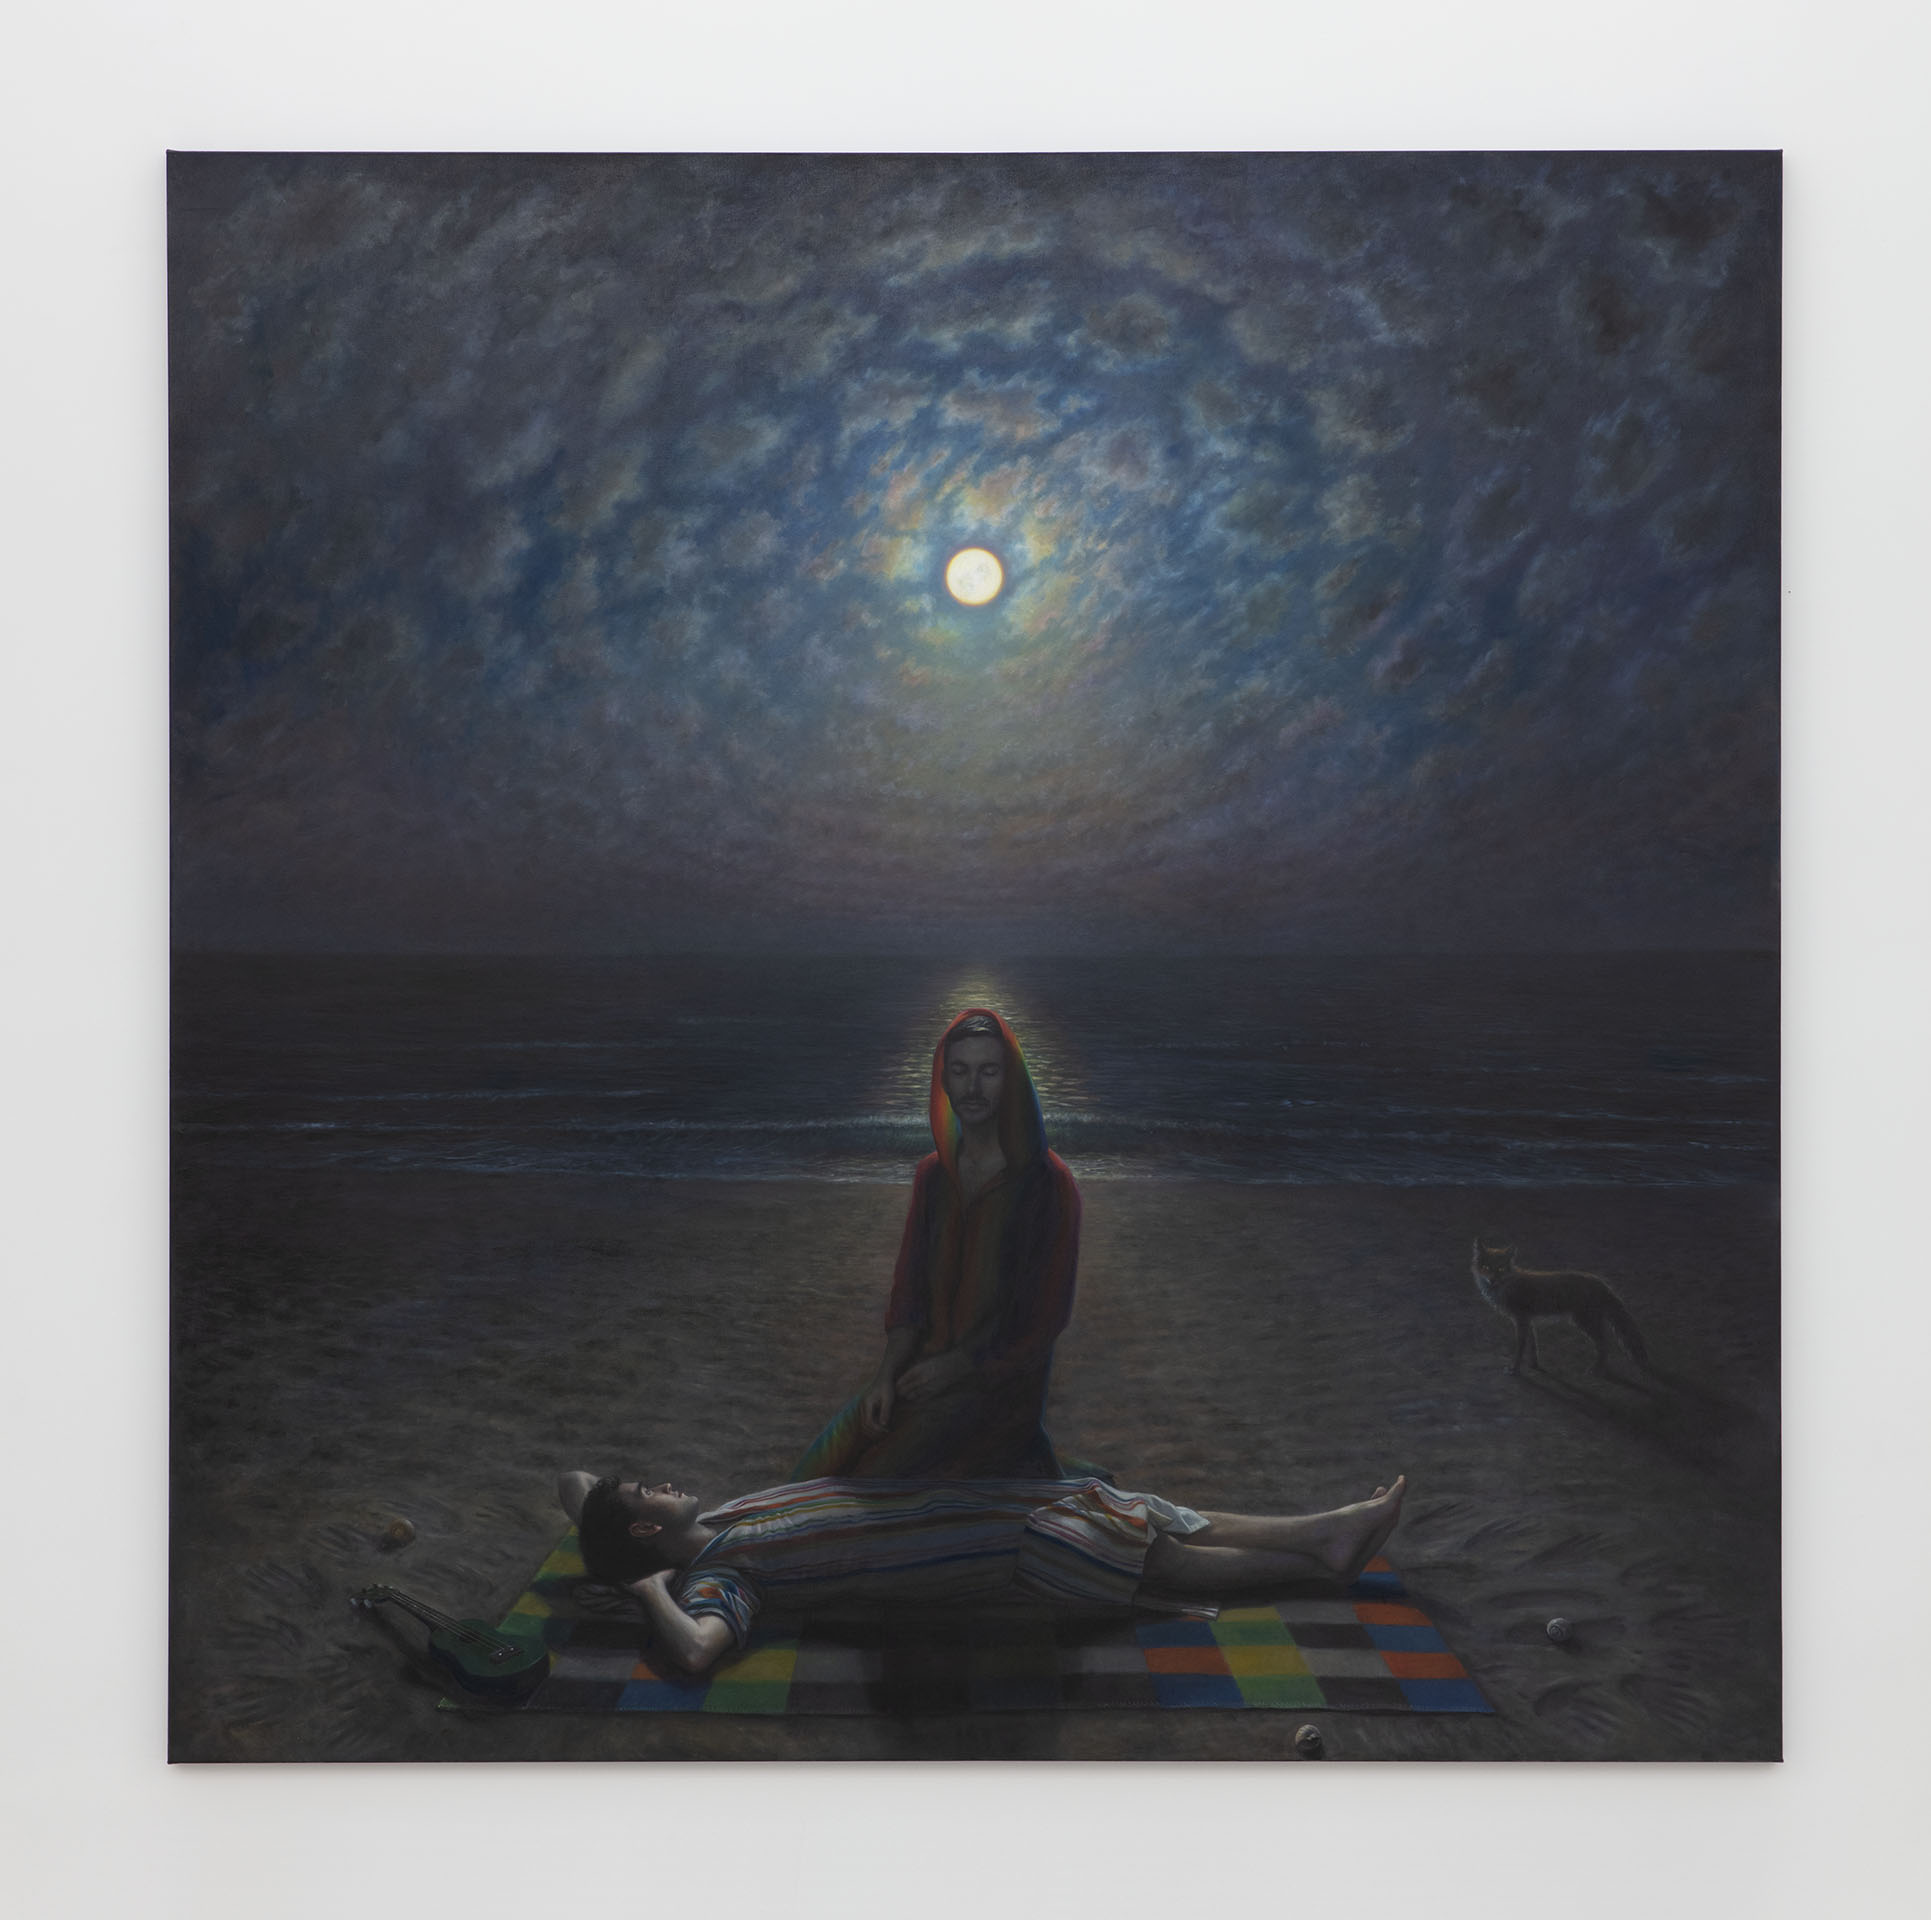 TM Davy. "Fire Island Moonrise", 2018. Oil on linen. 335 x 335 cm 